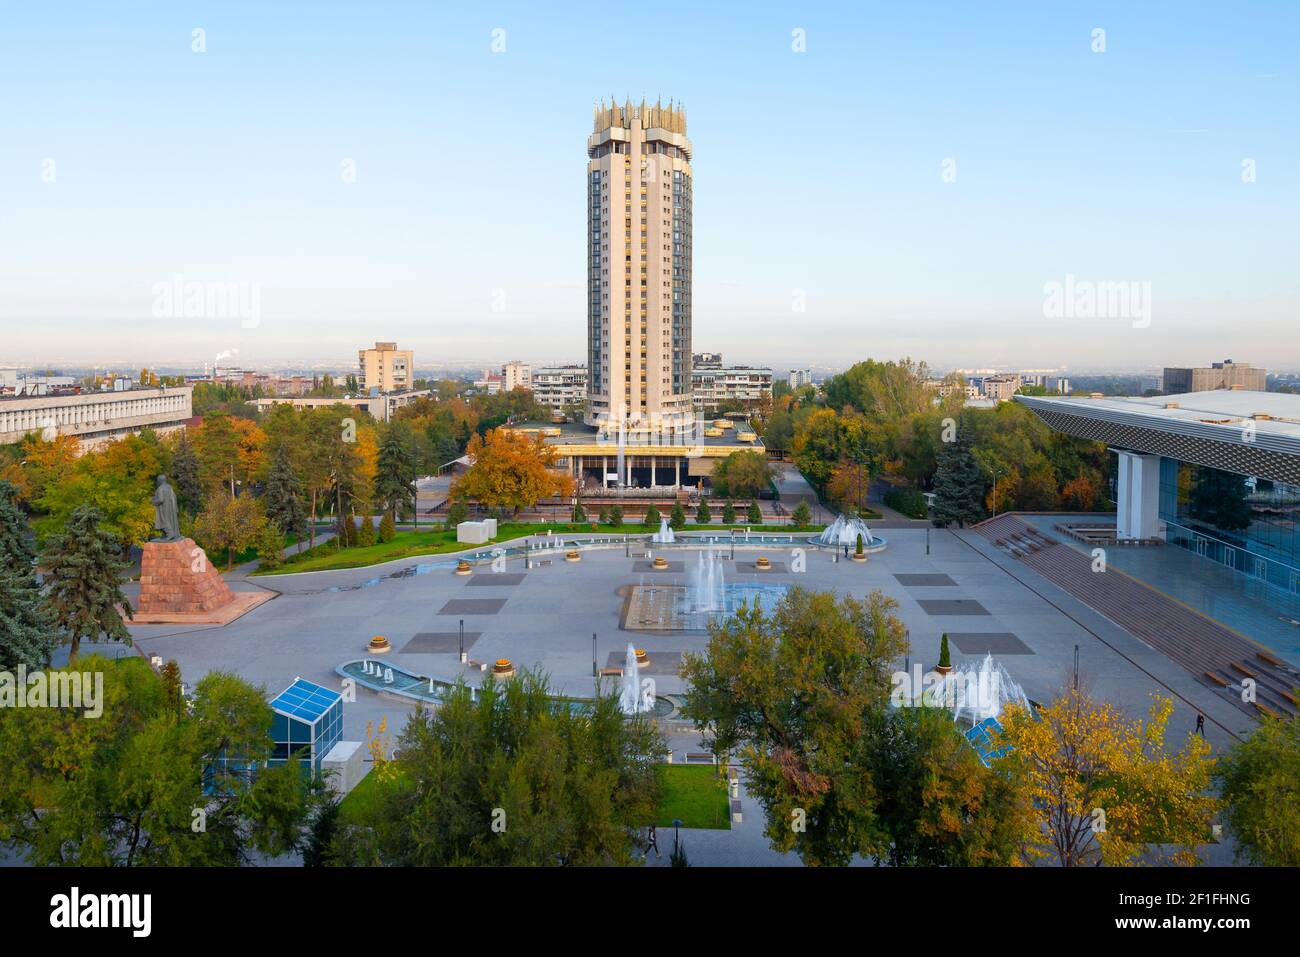 Kazajstán Hotel torre en la Plaza Abai, Almaty. Vegetación y fuentes de agua en la Plaza Abay frente al Palacio de la República. Foto de stock